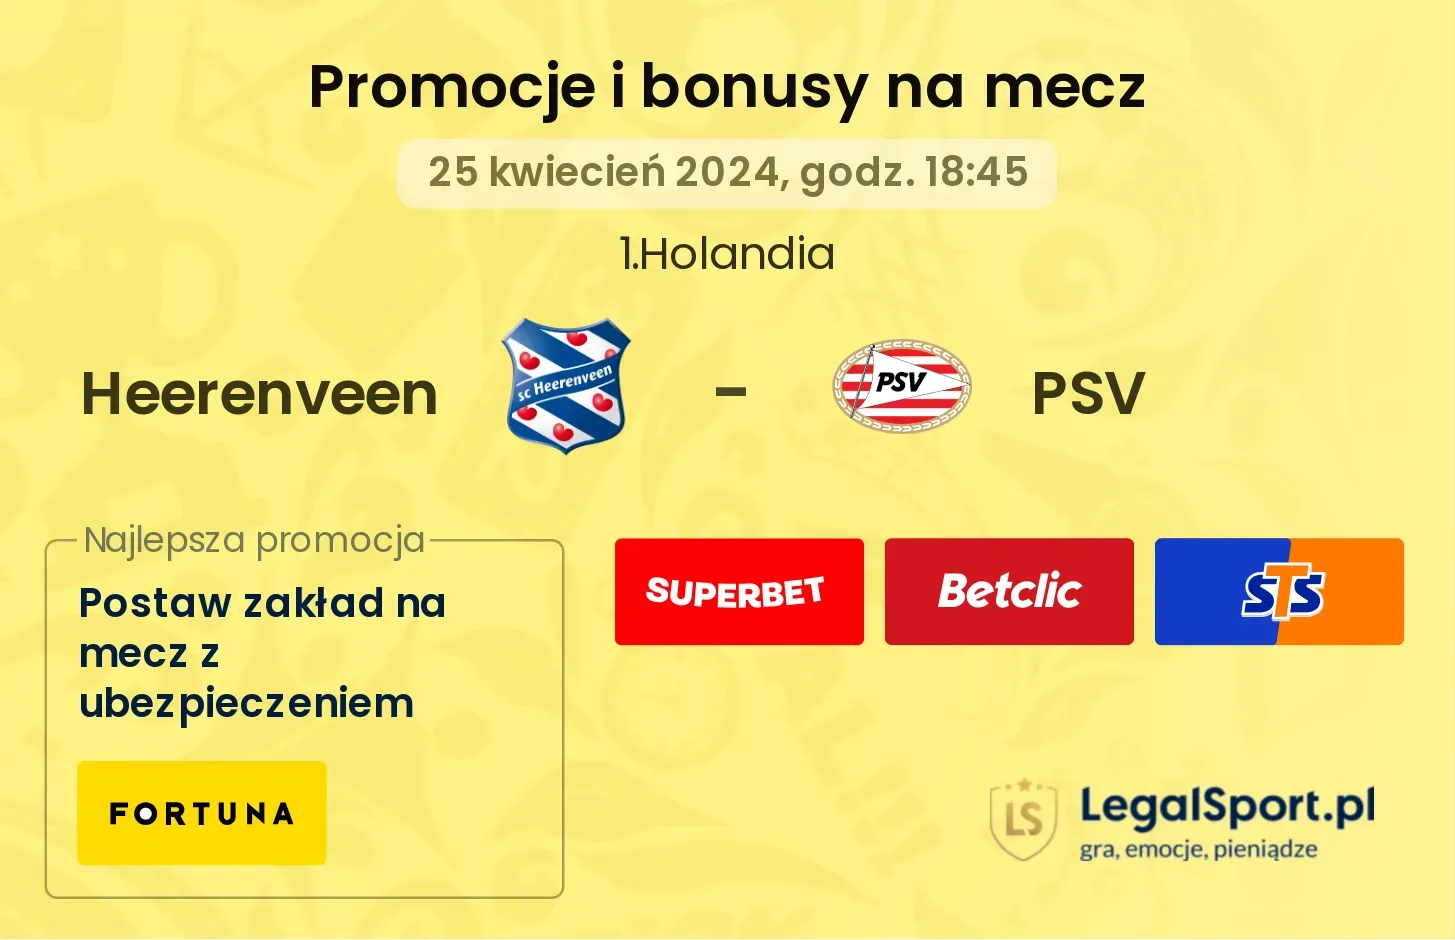 Heerenveen - PSV promocje bonusy na mecz